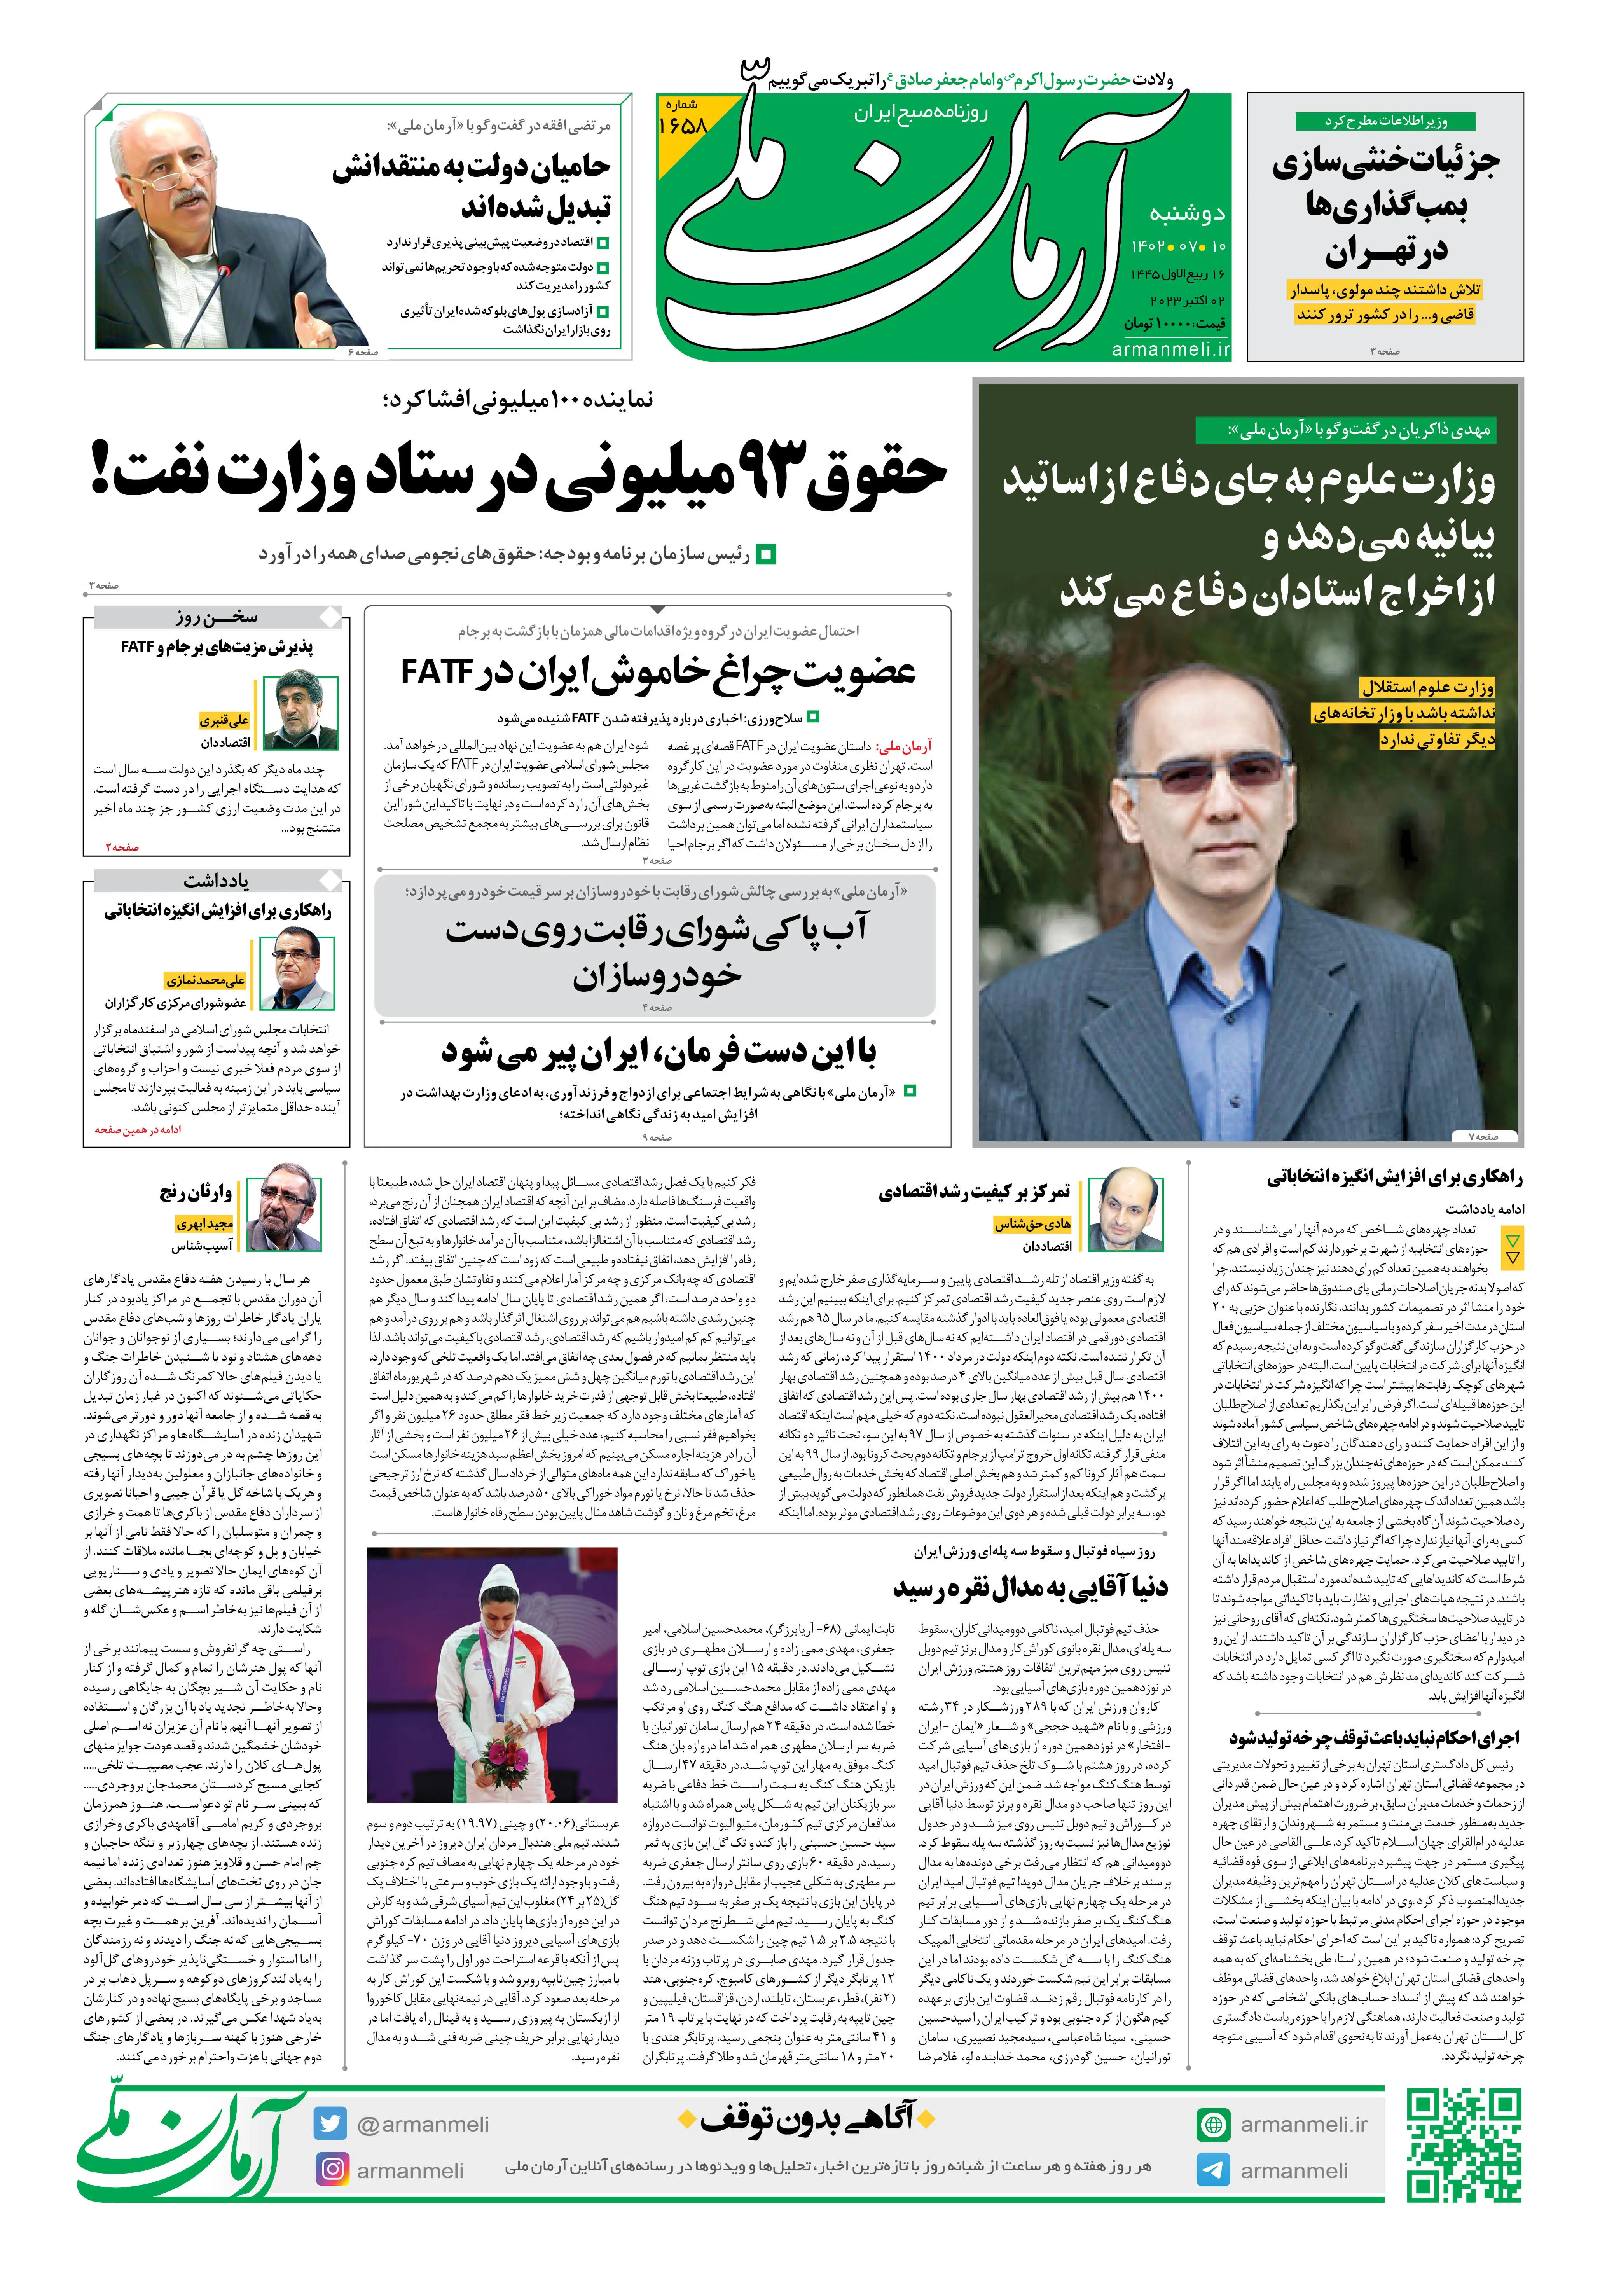 روزنامه آرمان ملی - دوشنبه 10 مهر - شماره 1658